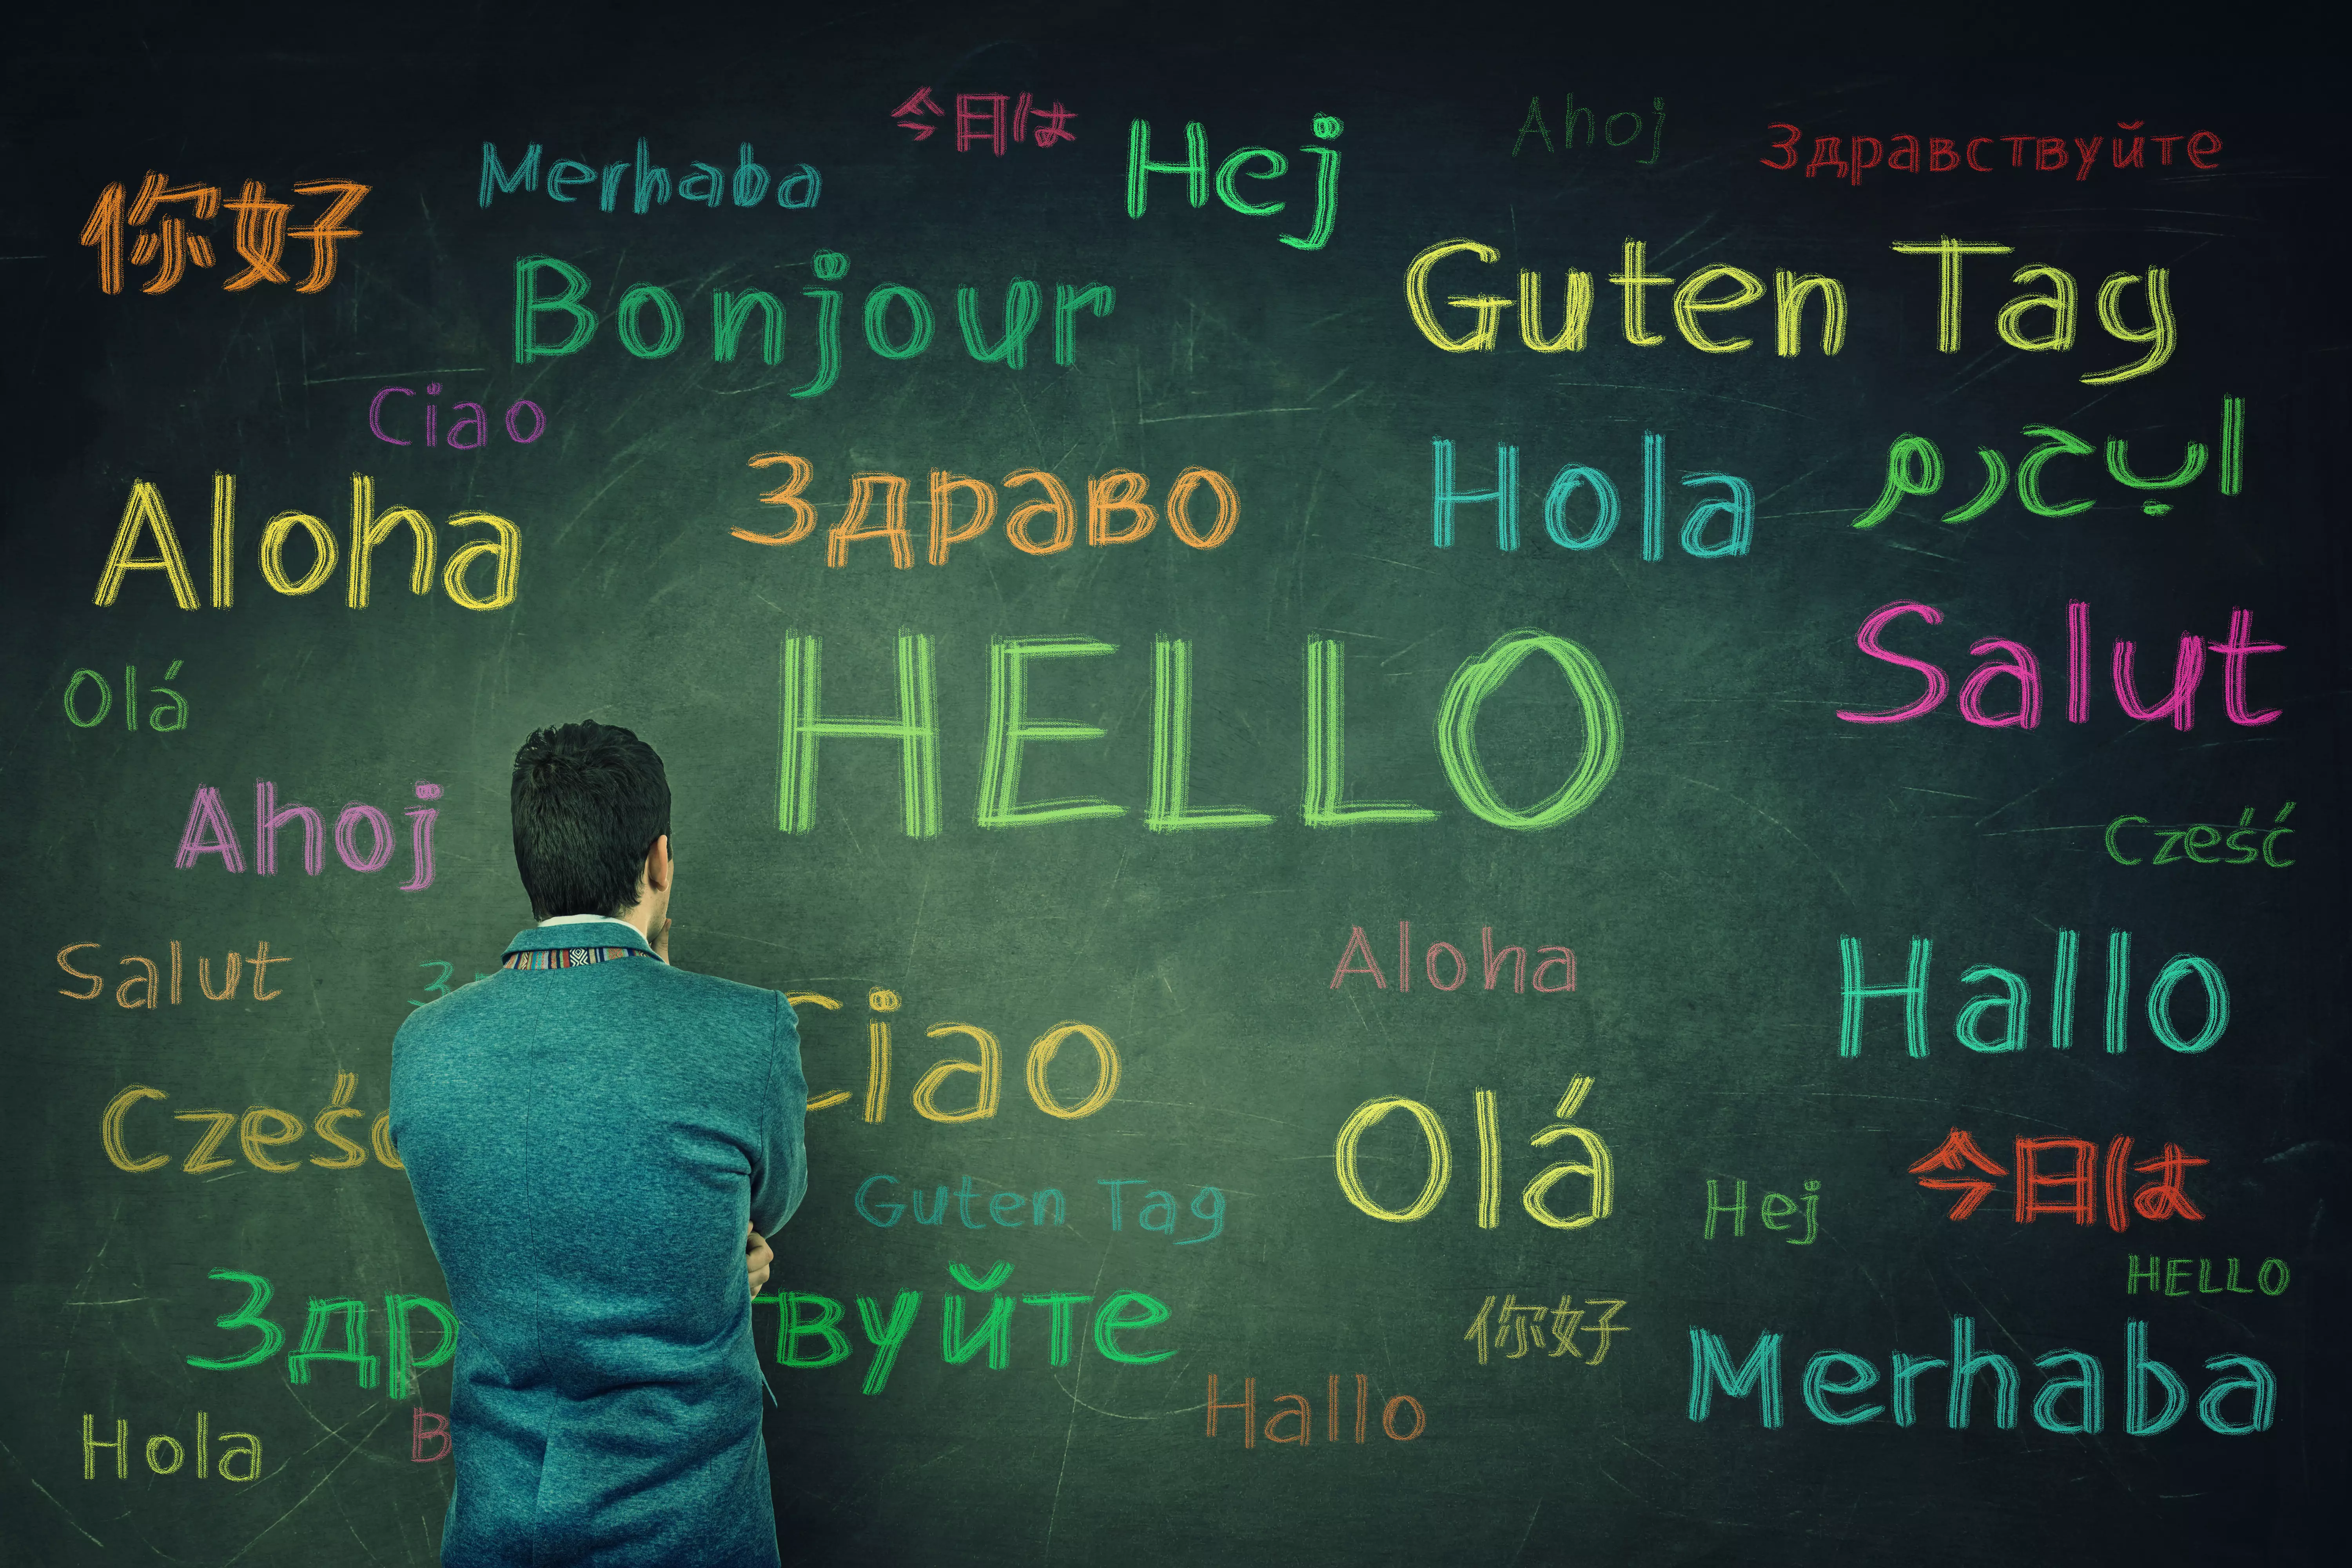 با 10 زبان اول دنیا سلام کنید